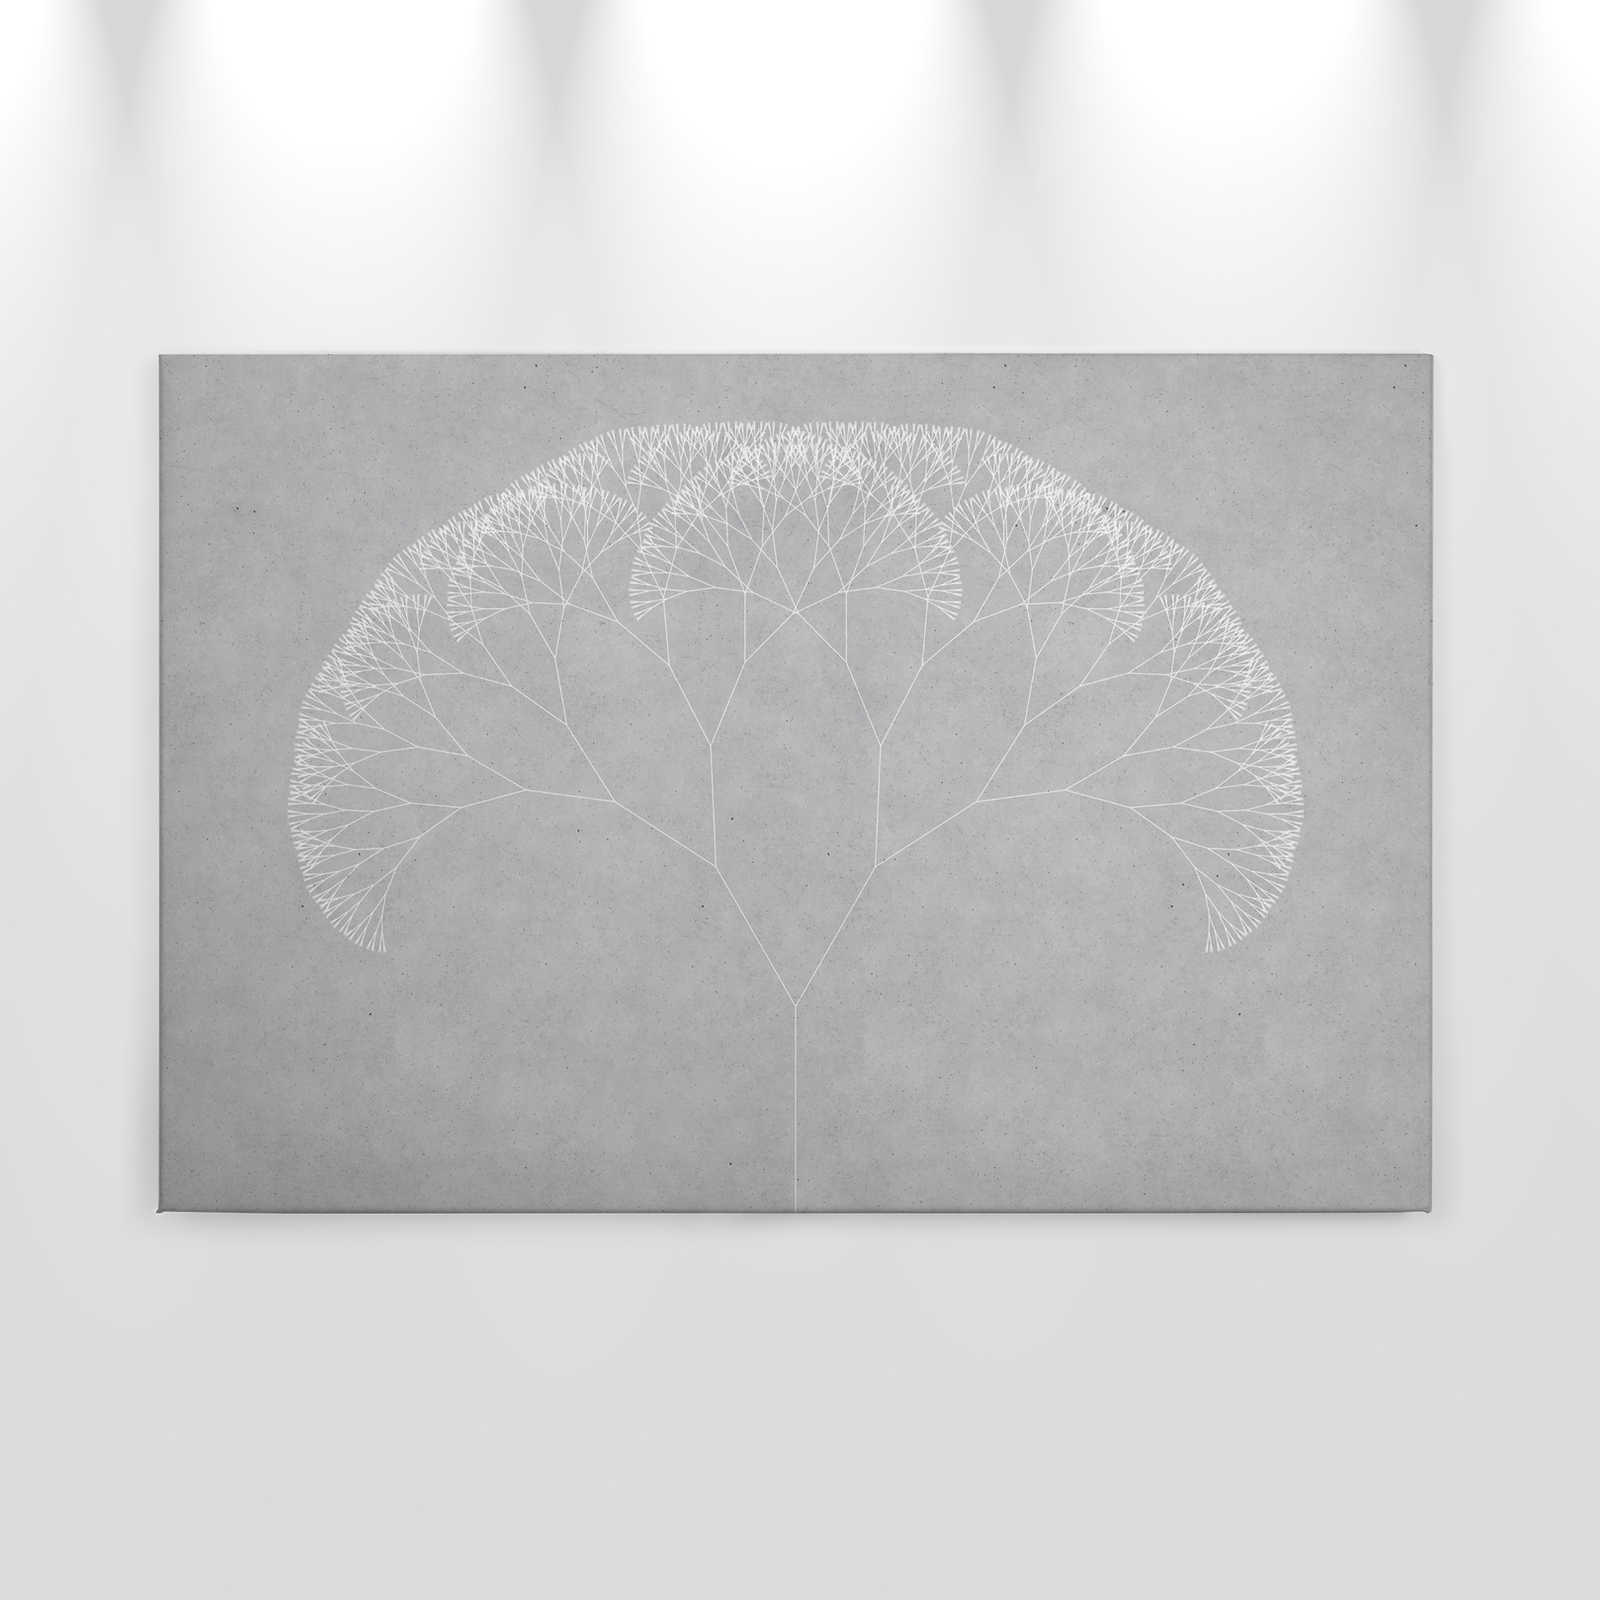             Leinwandbild Pusteblumen Baum | grau, weiß – 0,90 m x 0,60 m
        